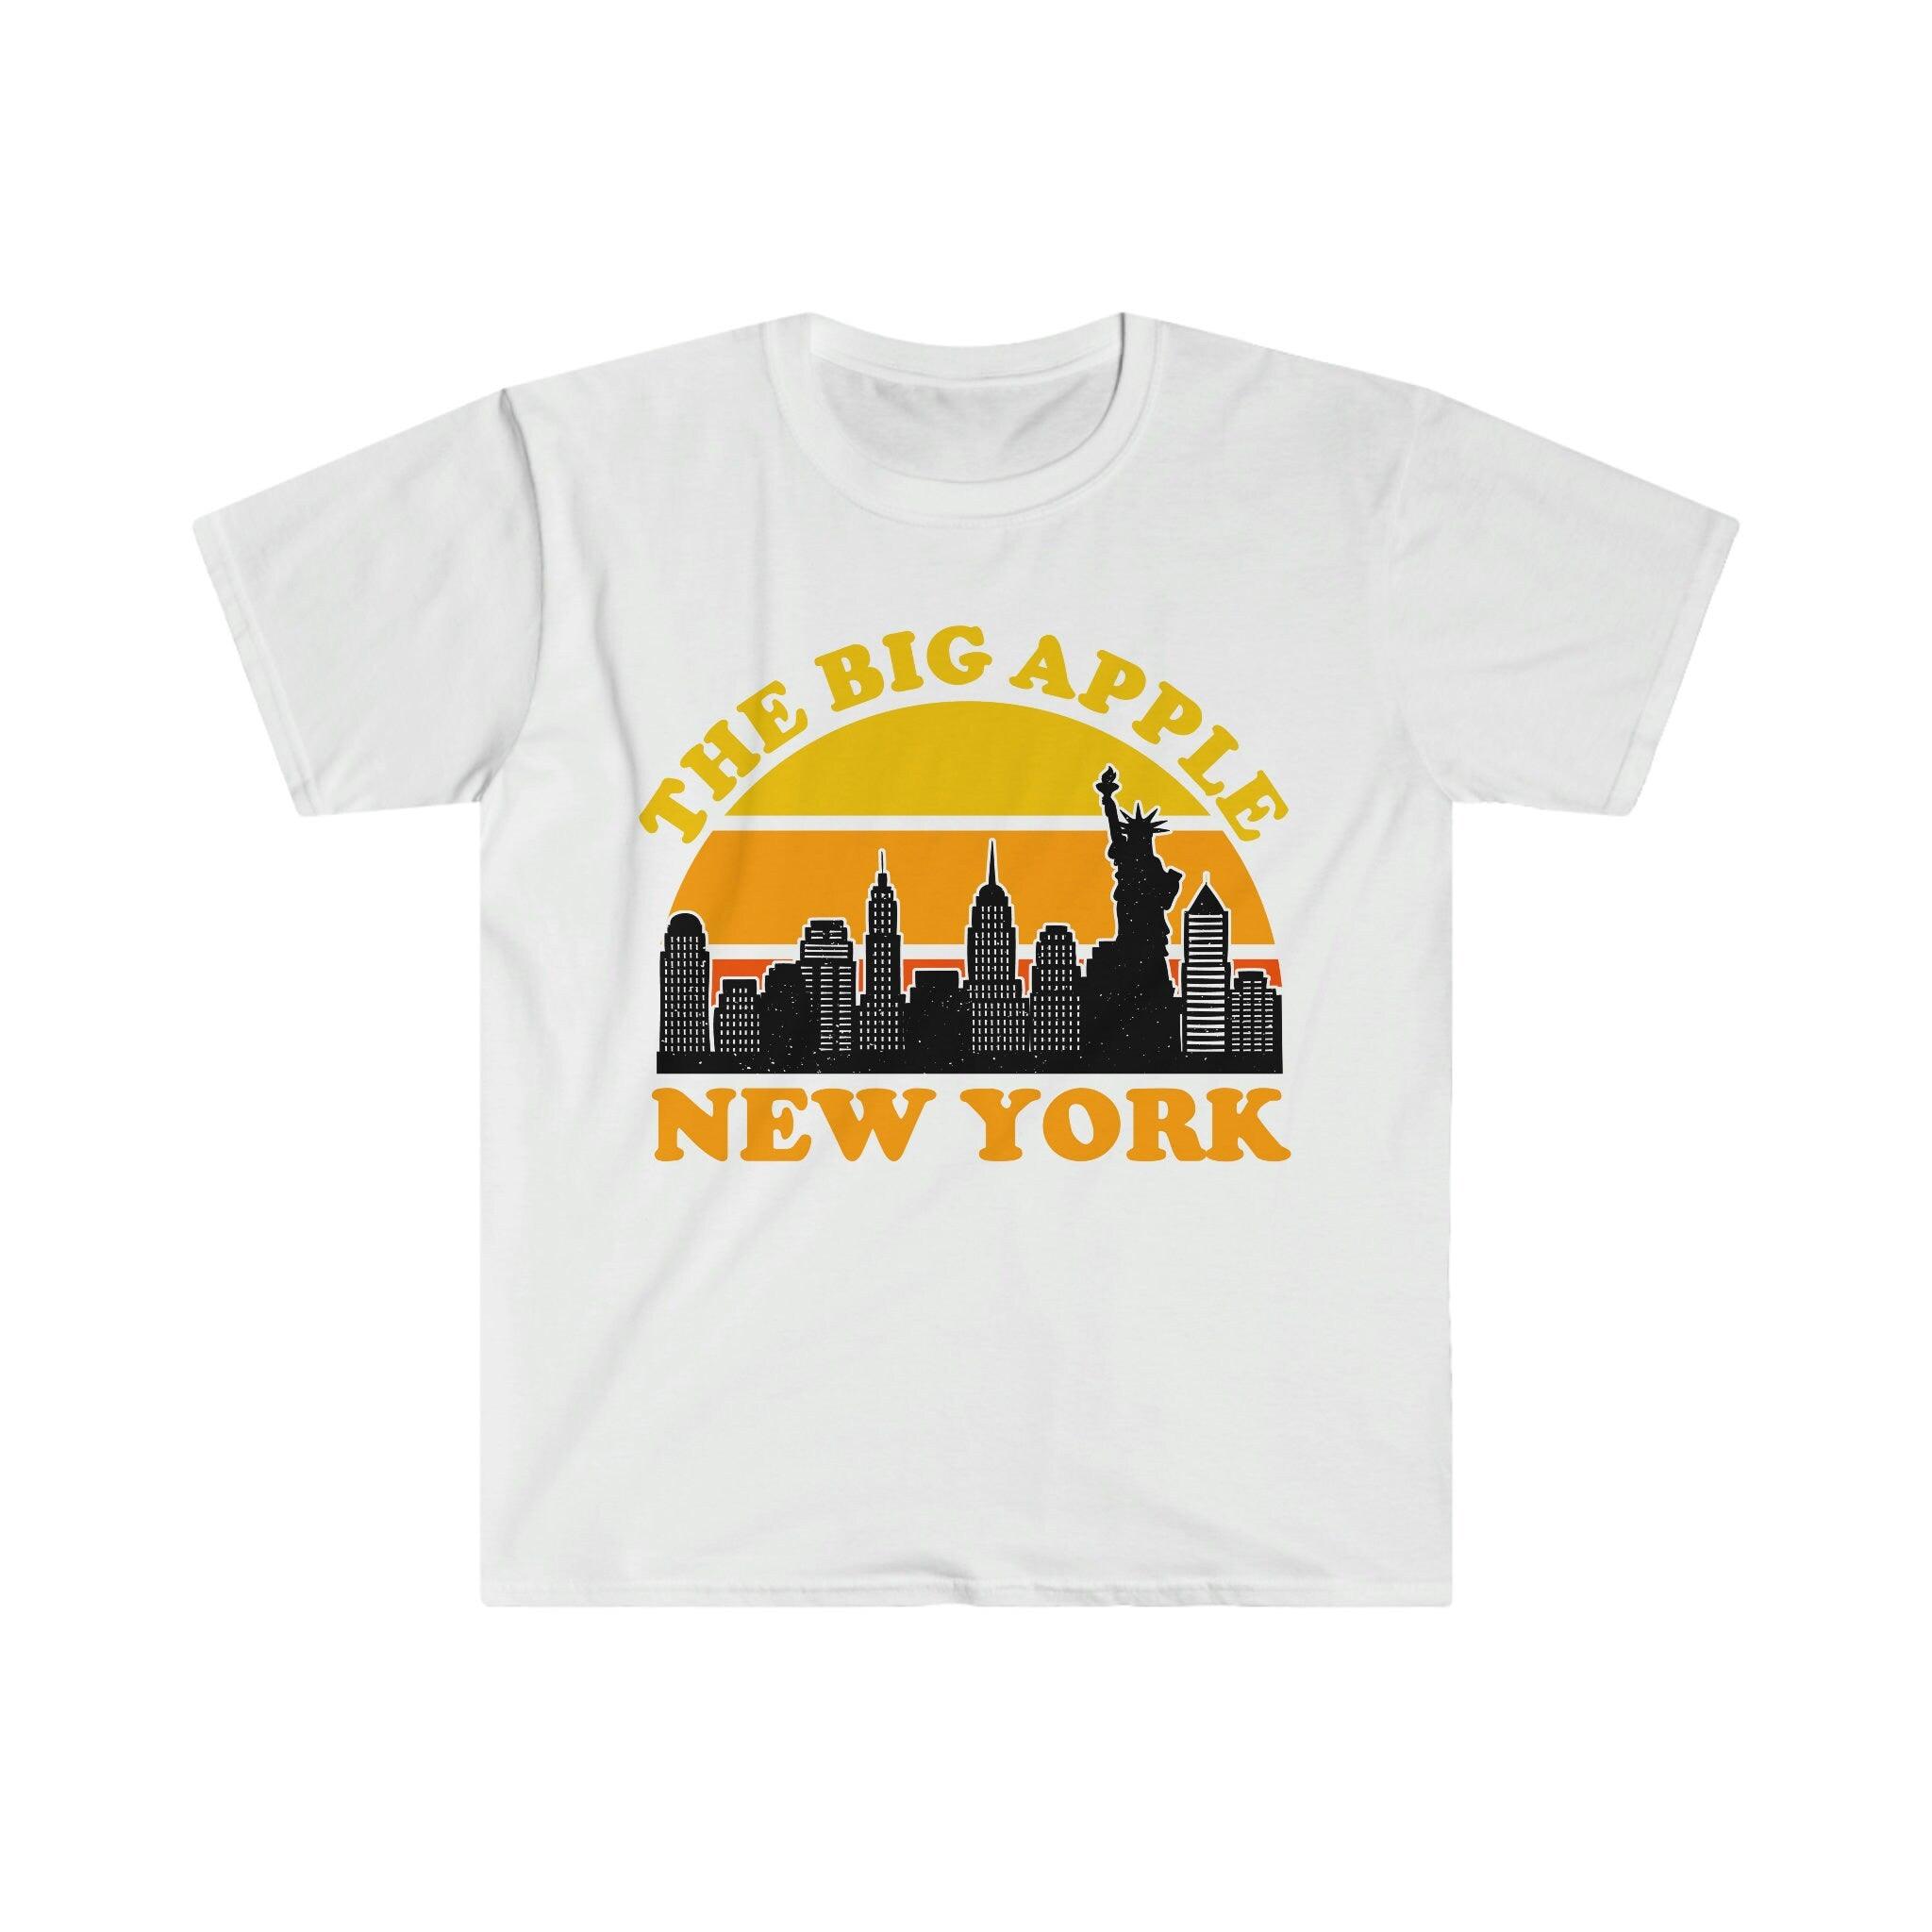 Lielais ābols Ņujorka | Retro saulrieta T-krekli, New York City Skyline Suvenir Tee, NYC ballīšu kostīms, Visit Trip Travel NY, Bruklinas tilts, pilsētas panorāma, Manhetena, Ņujorka, Ņujorkas pilsēta, ņujorkas pilsētas māksla, Ņujorkas dāvana, Ņujorkas apdruka, Ņujorkas panorāma, nyc, nyc dāvana, nyc panorāma, brīvības statuja, tī, tējas - plusminusco.com